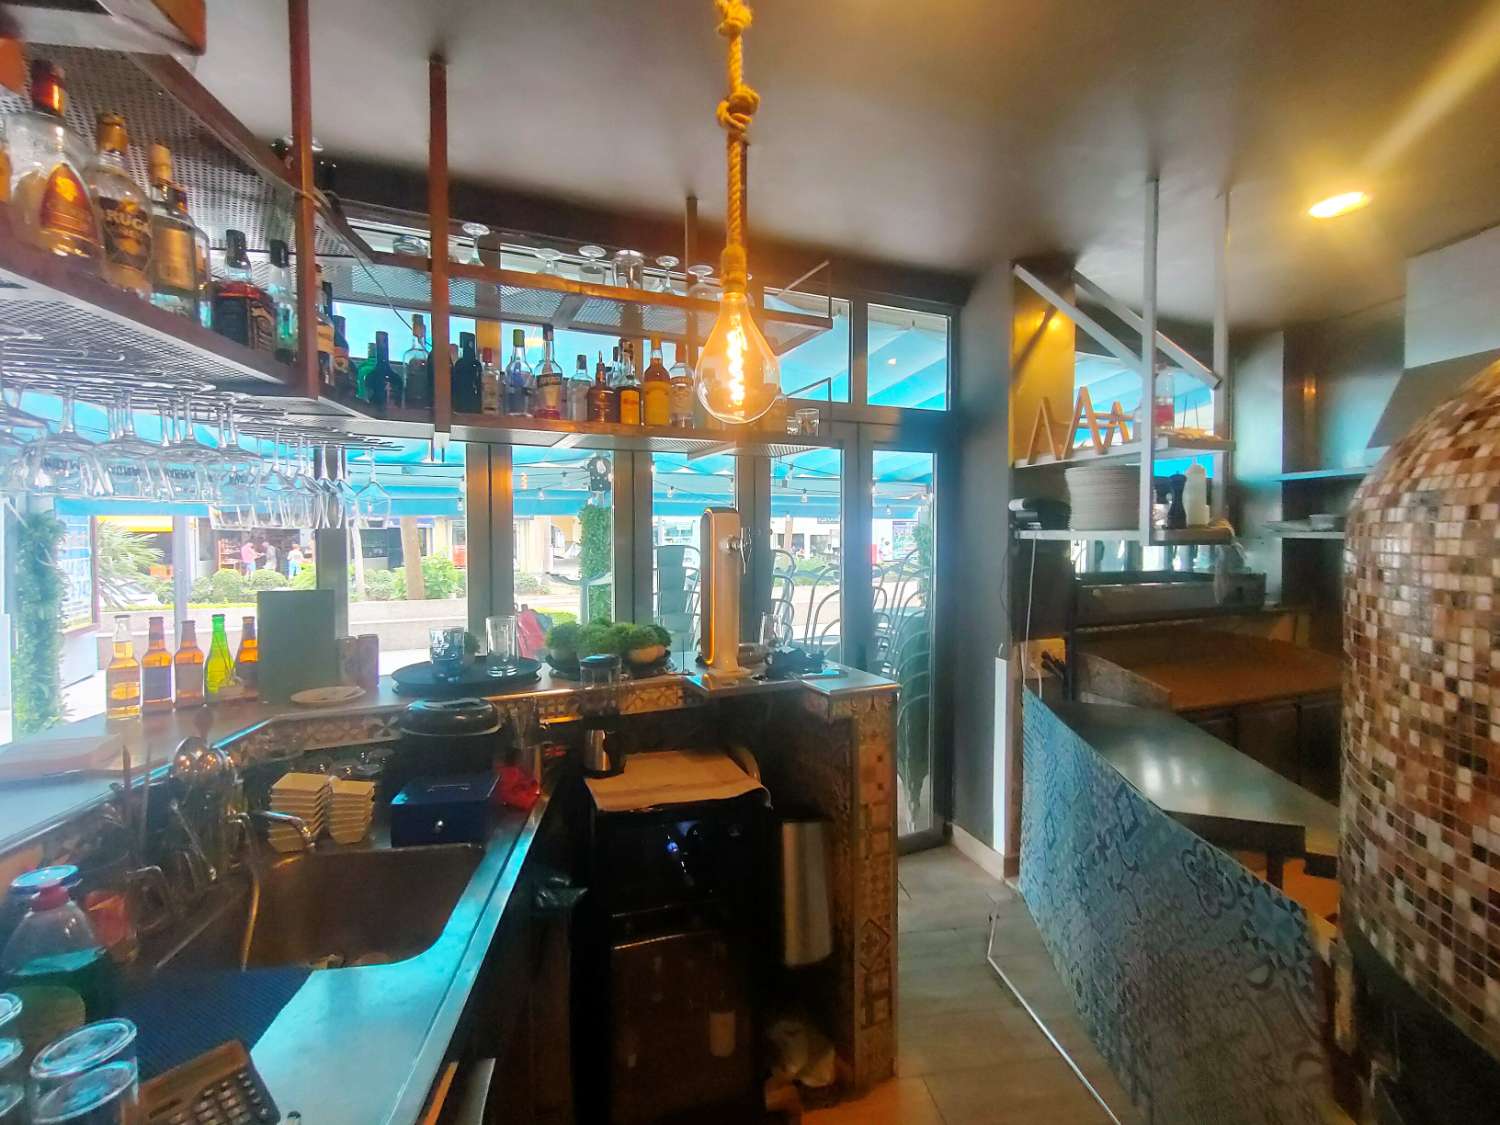 Pizzeria Caffetteria in Vendita a Benalmadena Costa del Sol - Sul viale PRINCIPALE